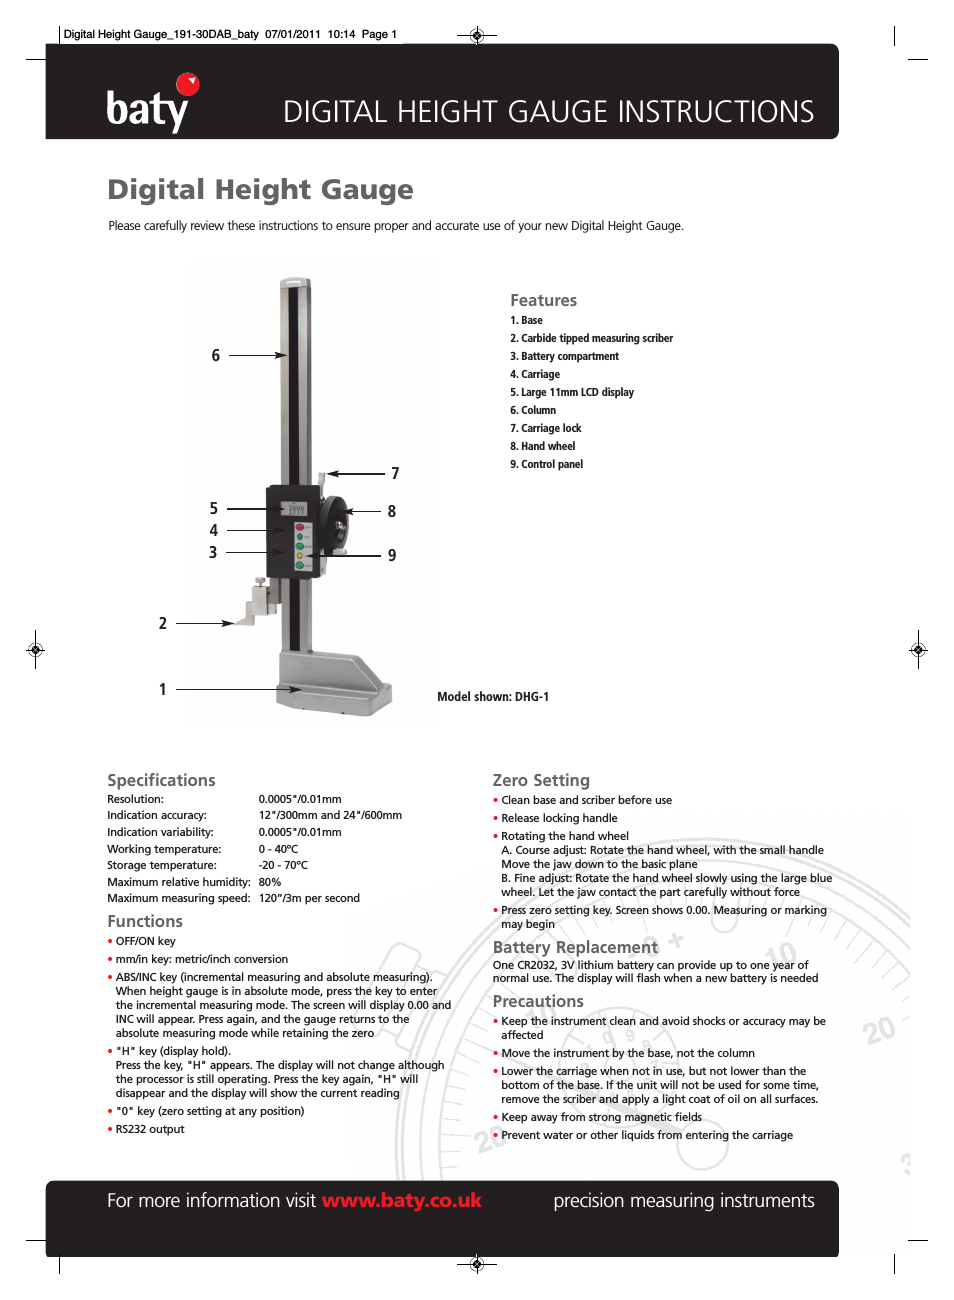 Baty - Heavy Duty Digital Height Gauge